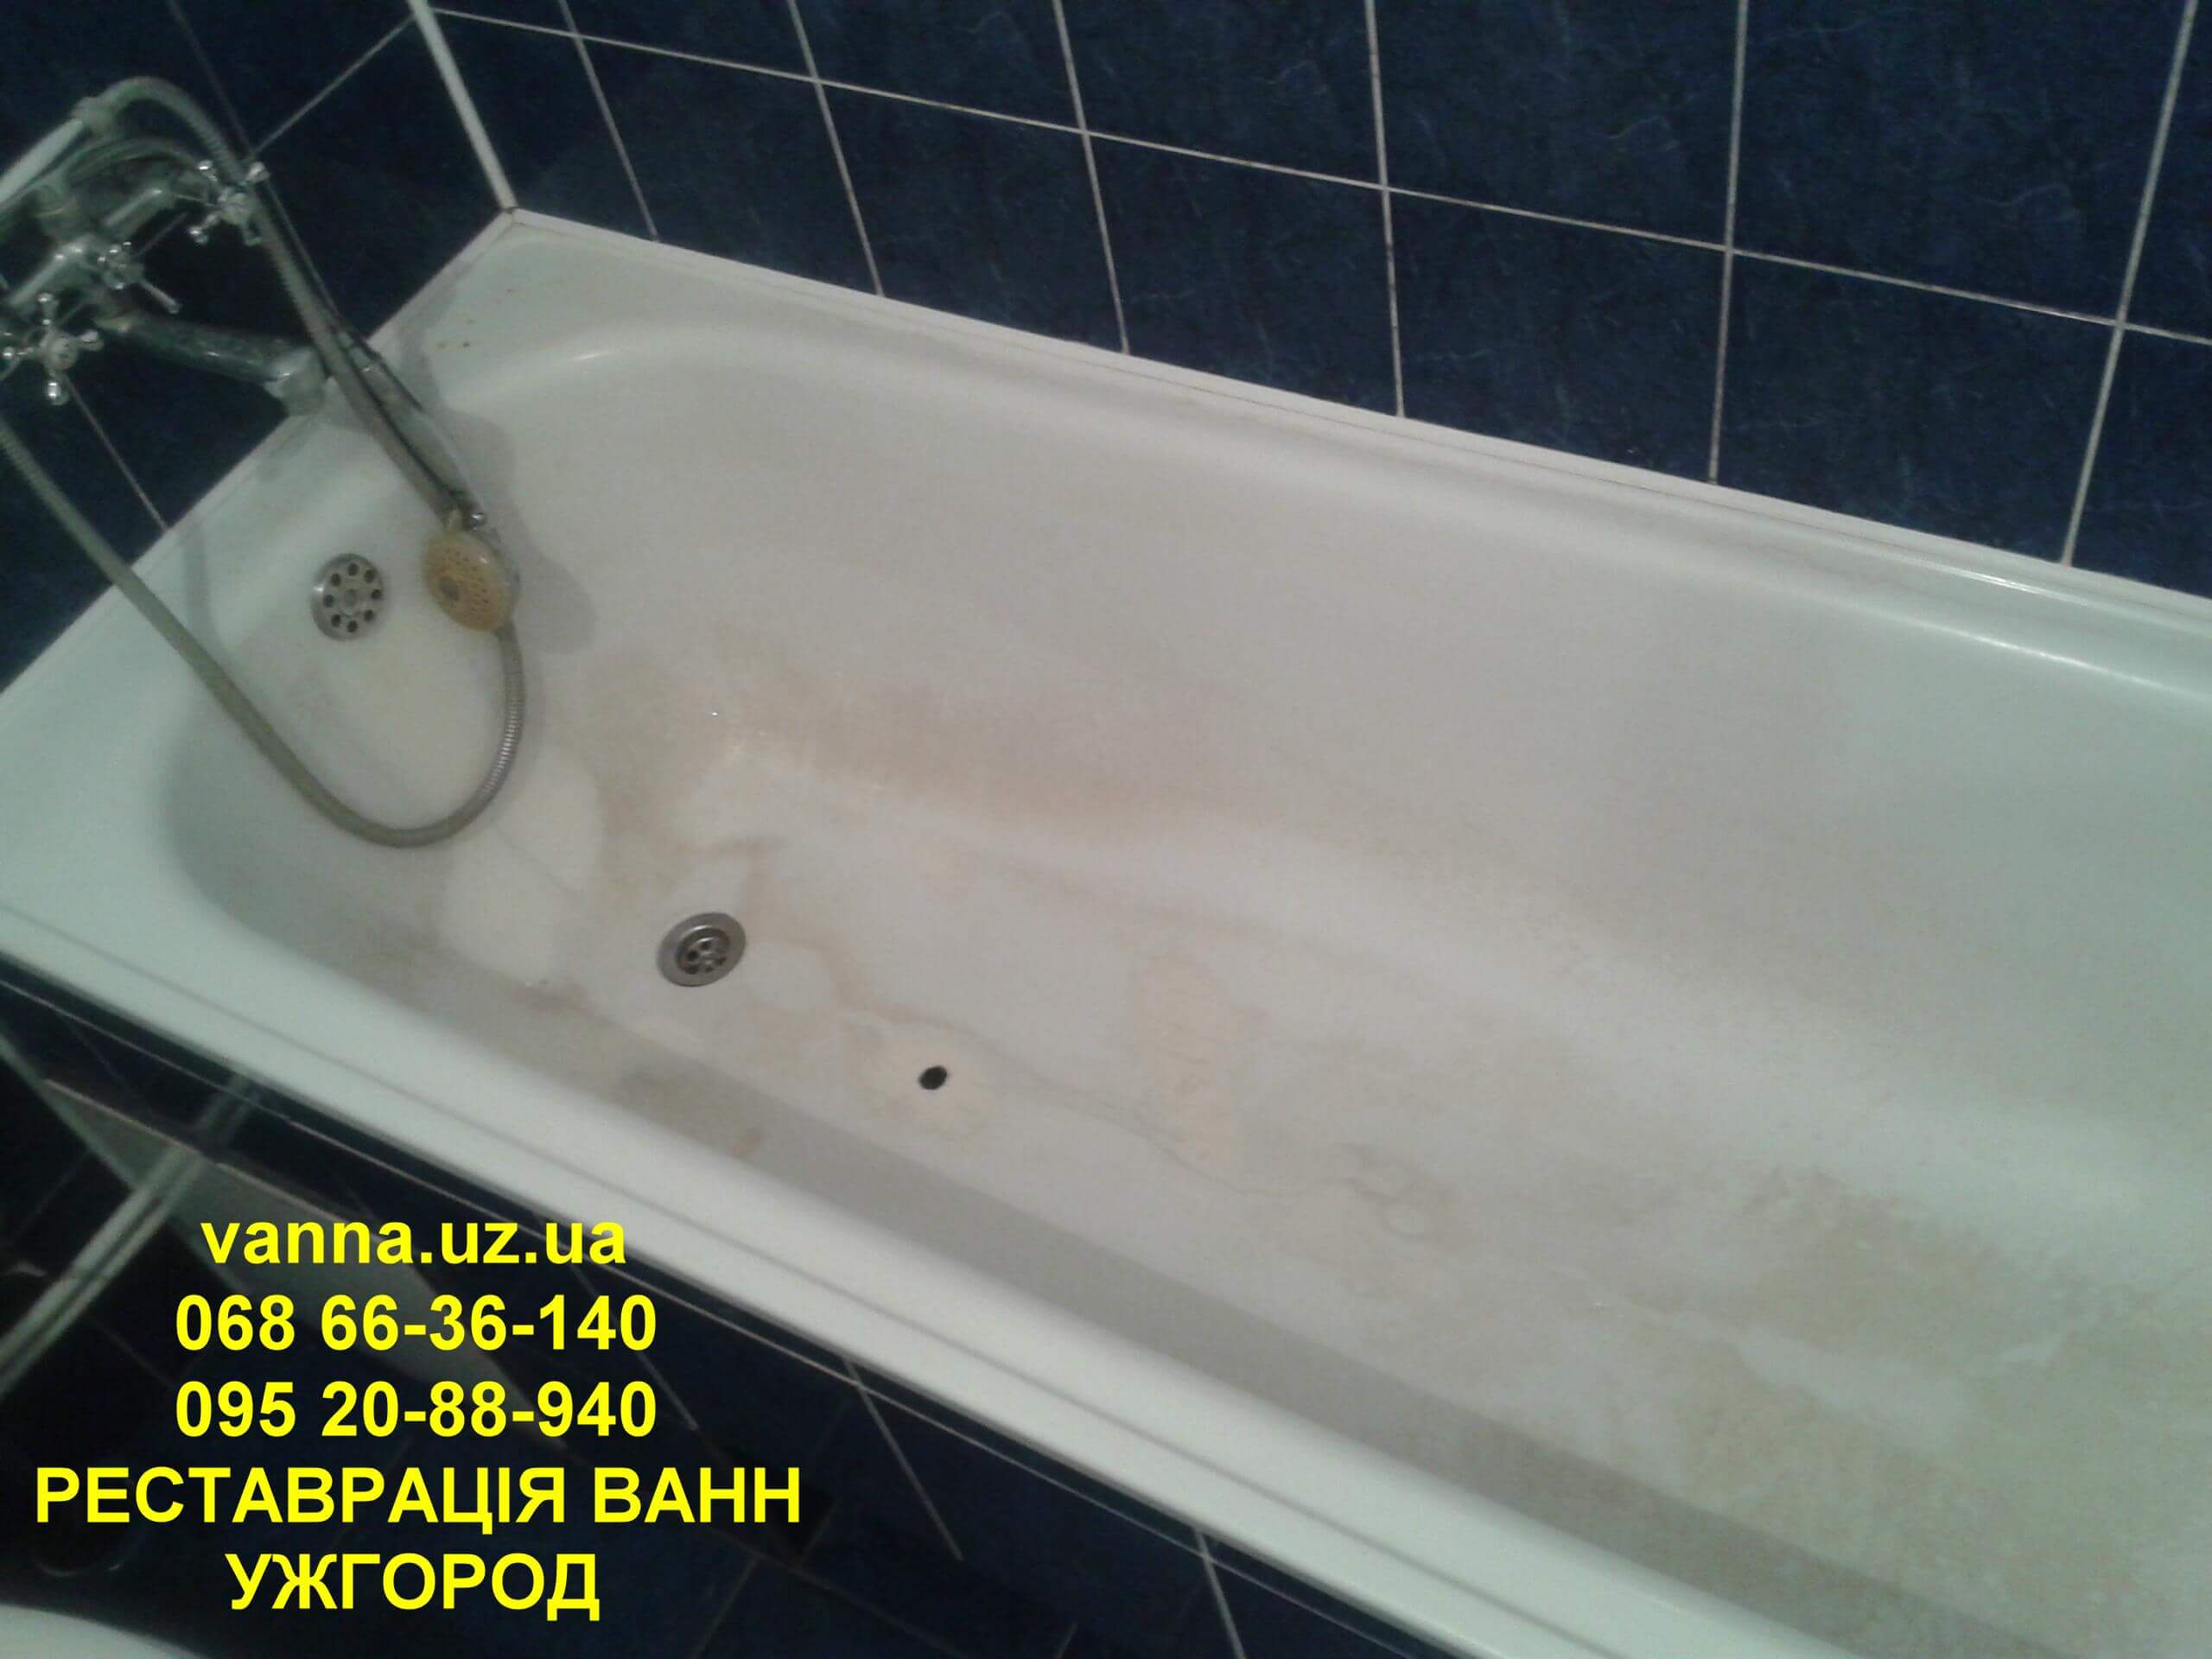 Якісно зроблена реставрація ванни в Ужгороді (вул. Тихого, 12)